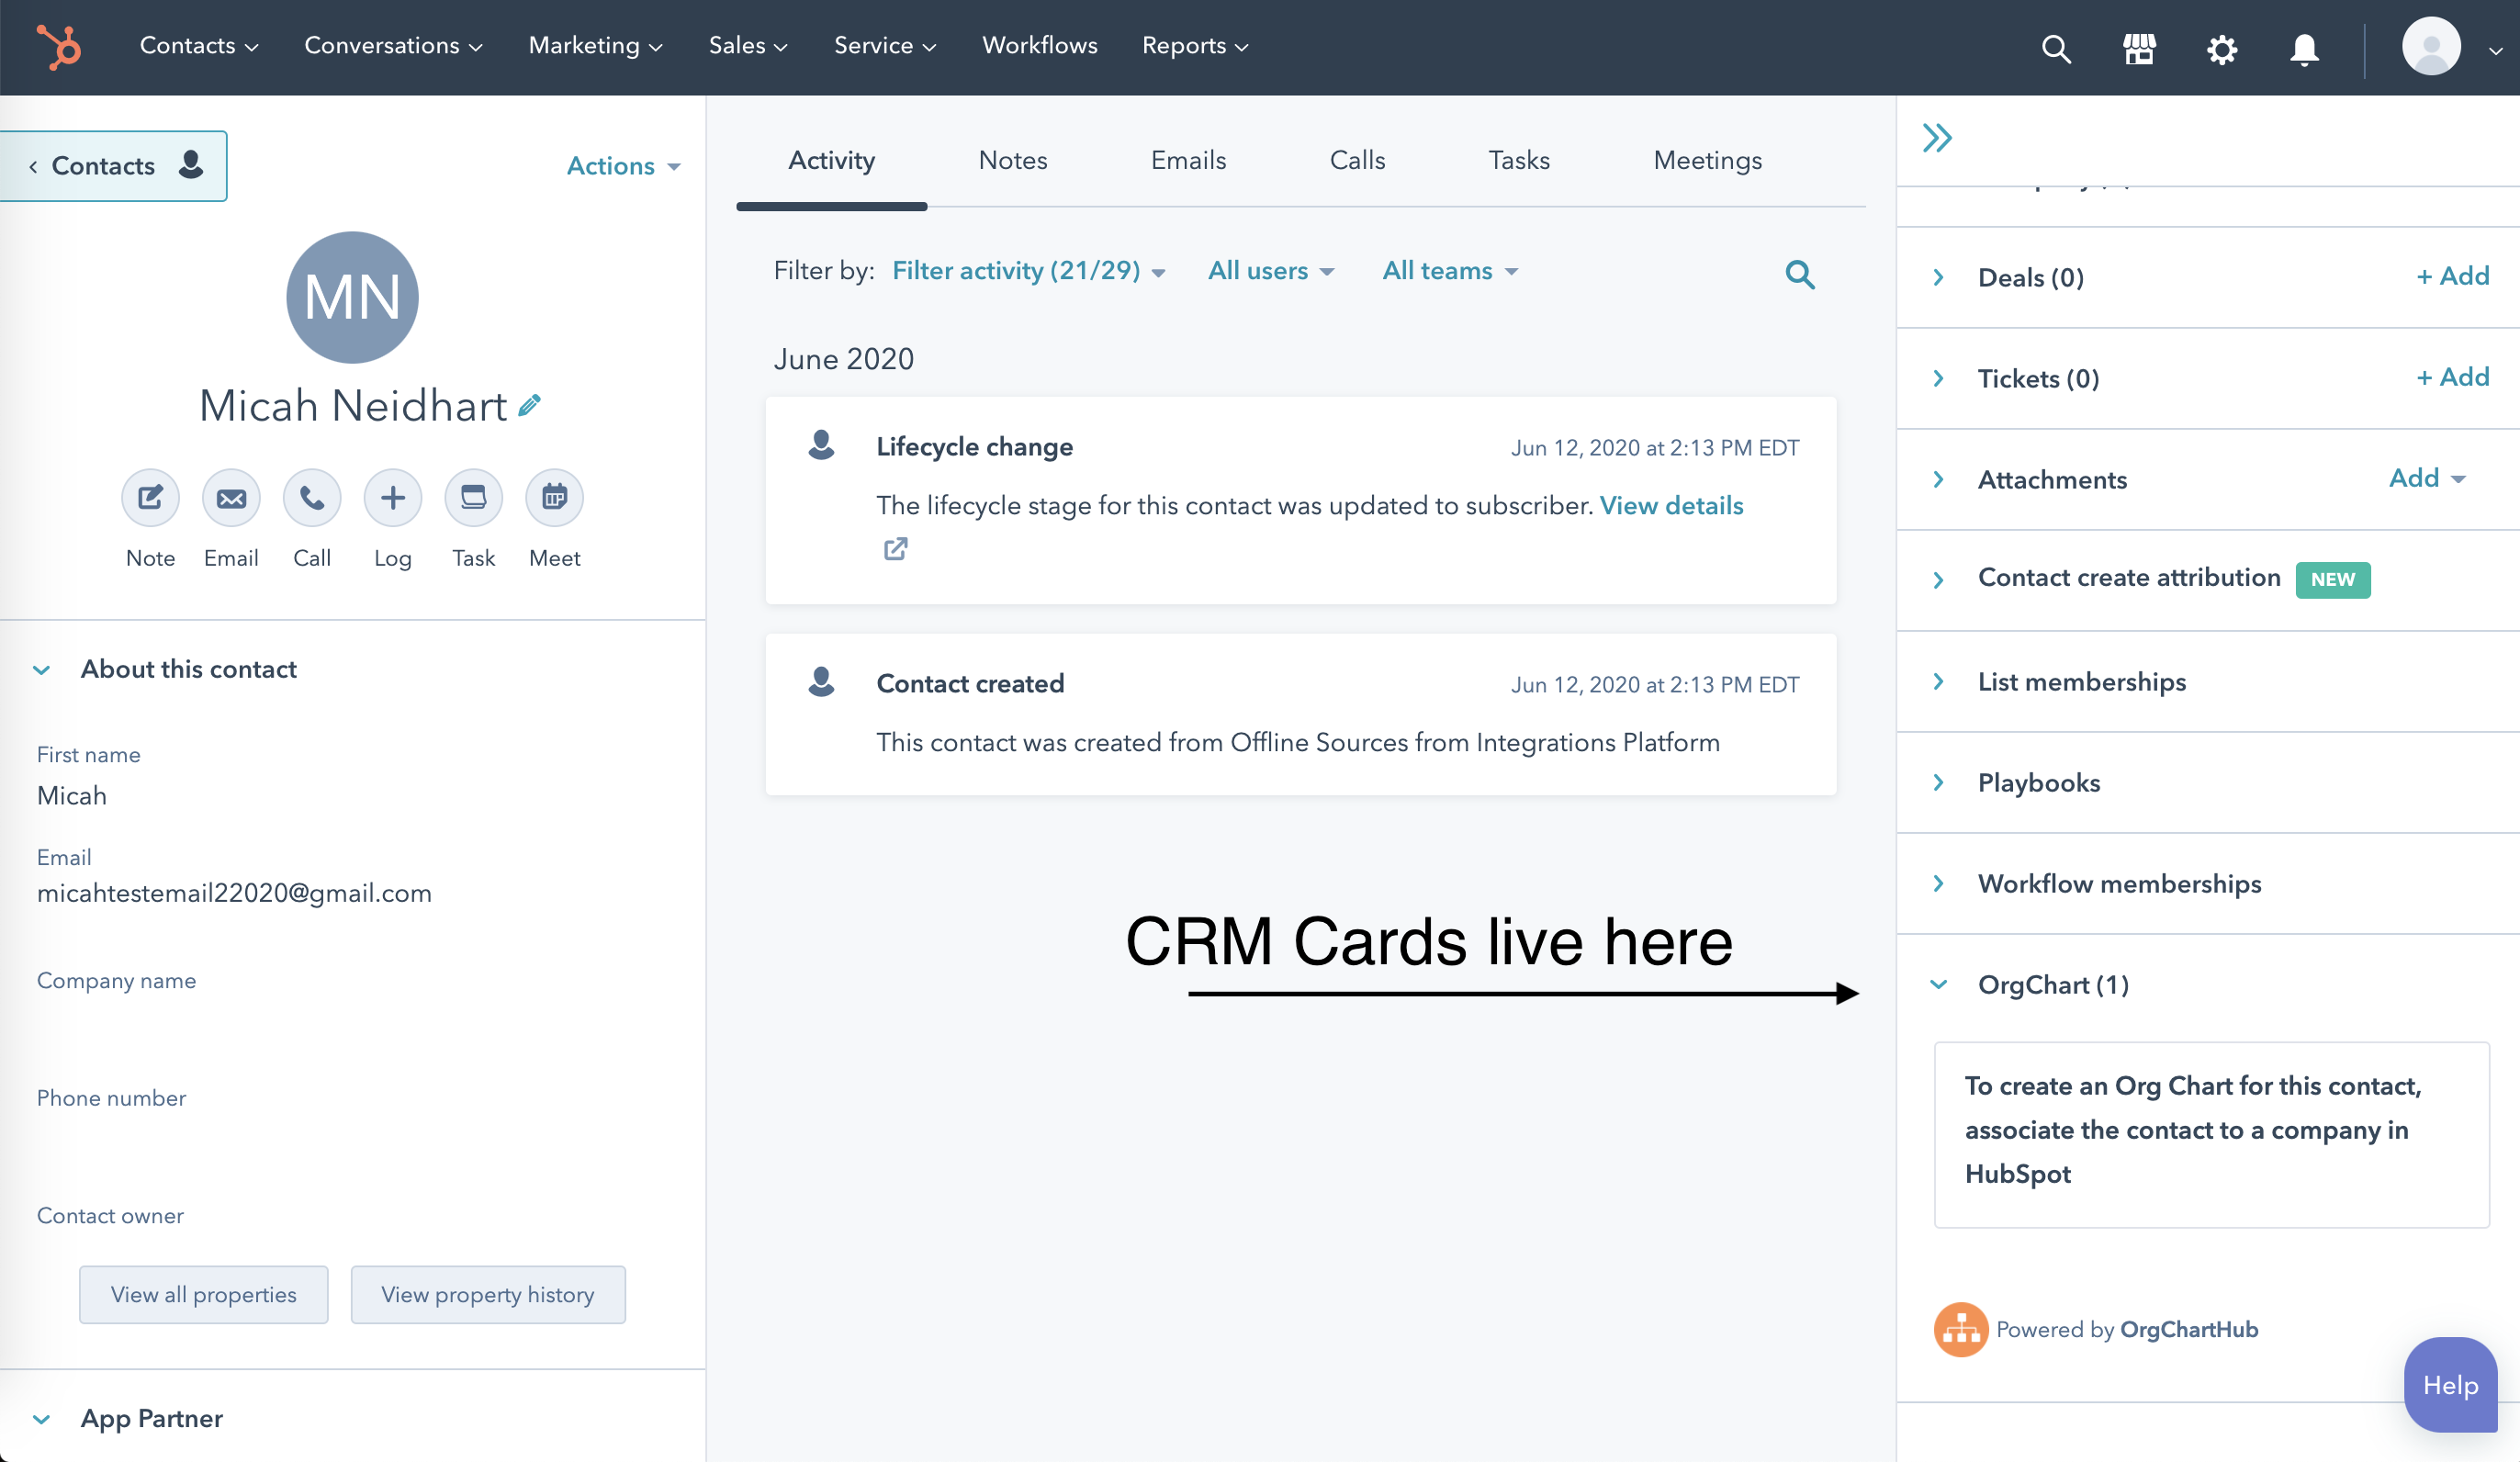 Screen shot of HubSpot CRM software.